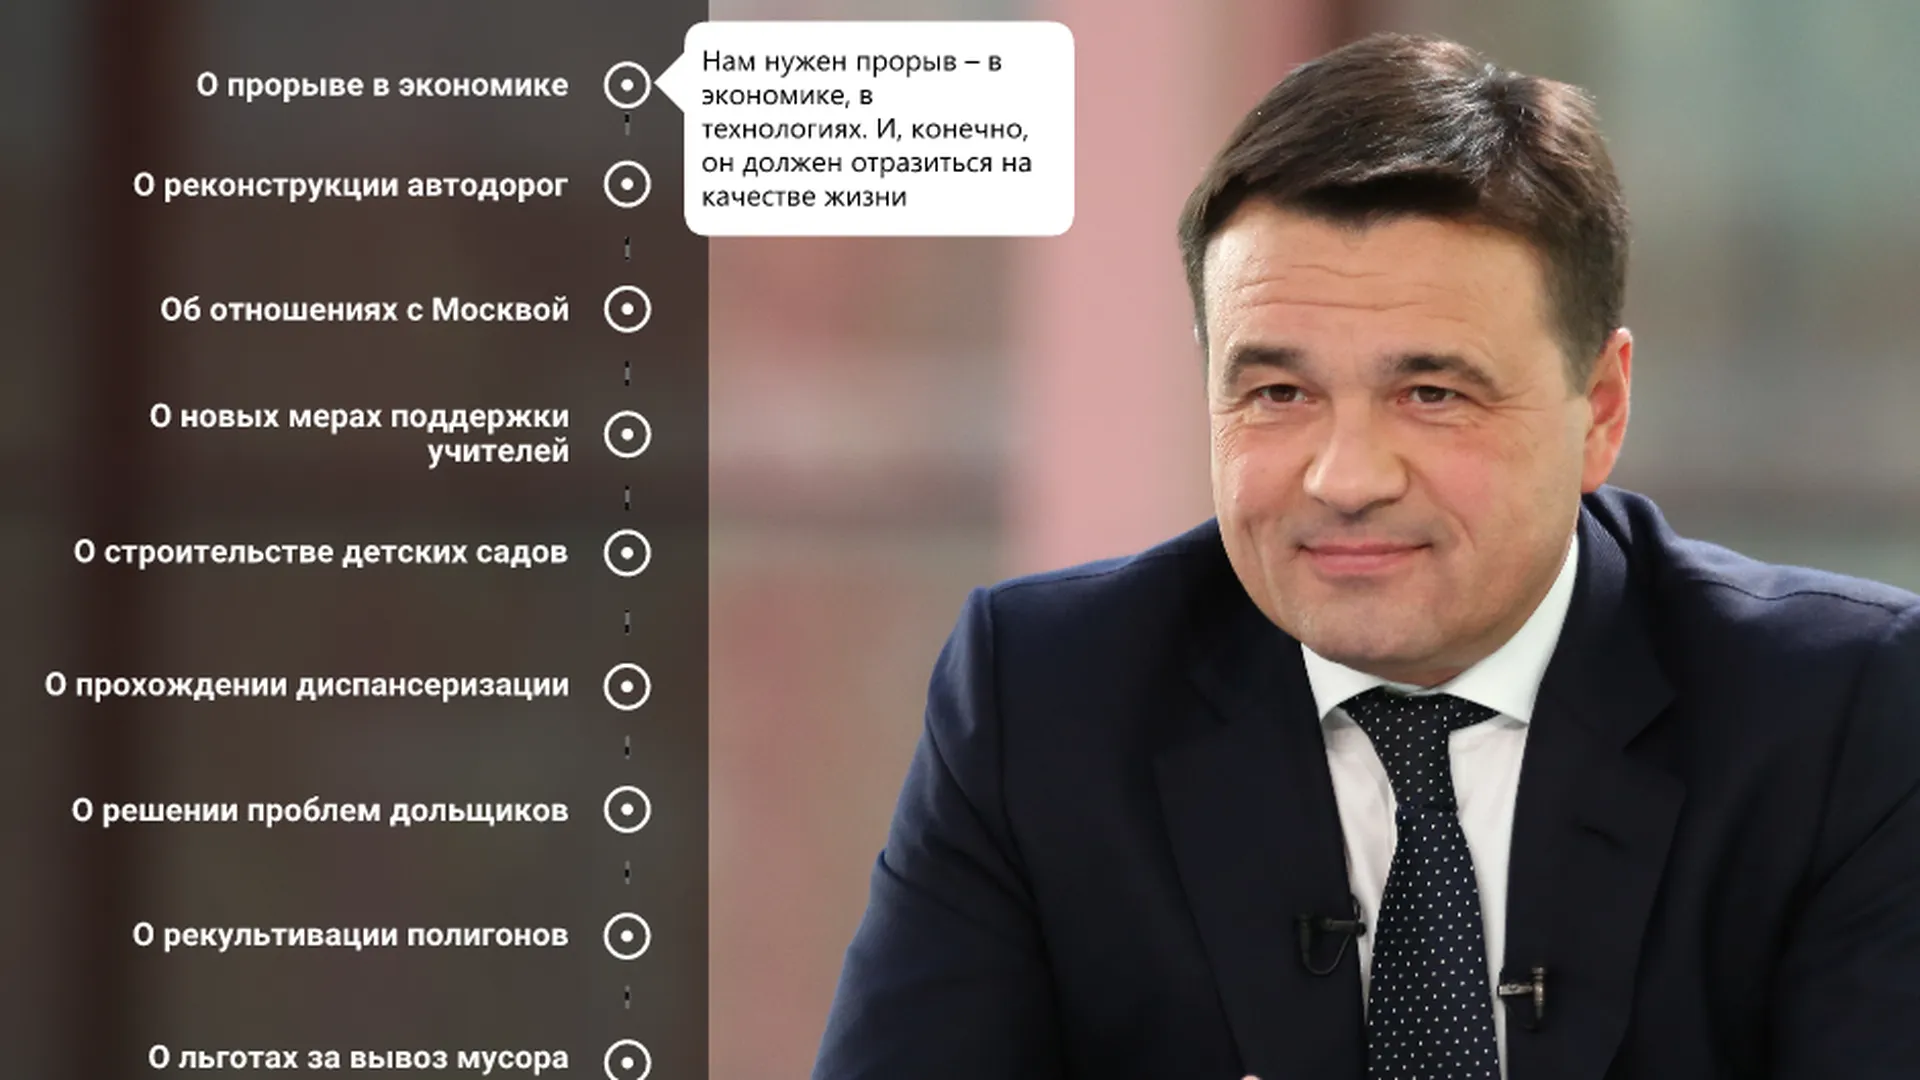 Главные темы ежегодного обращения губернатора Московской области​ к жителям